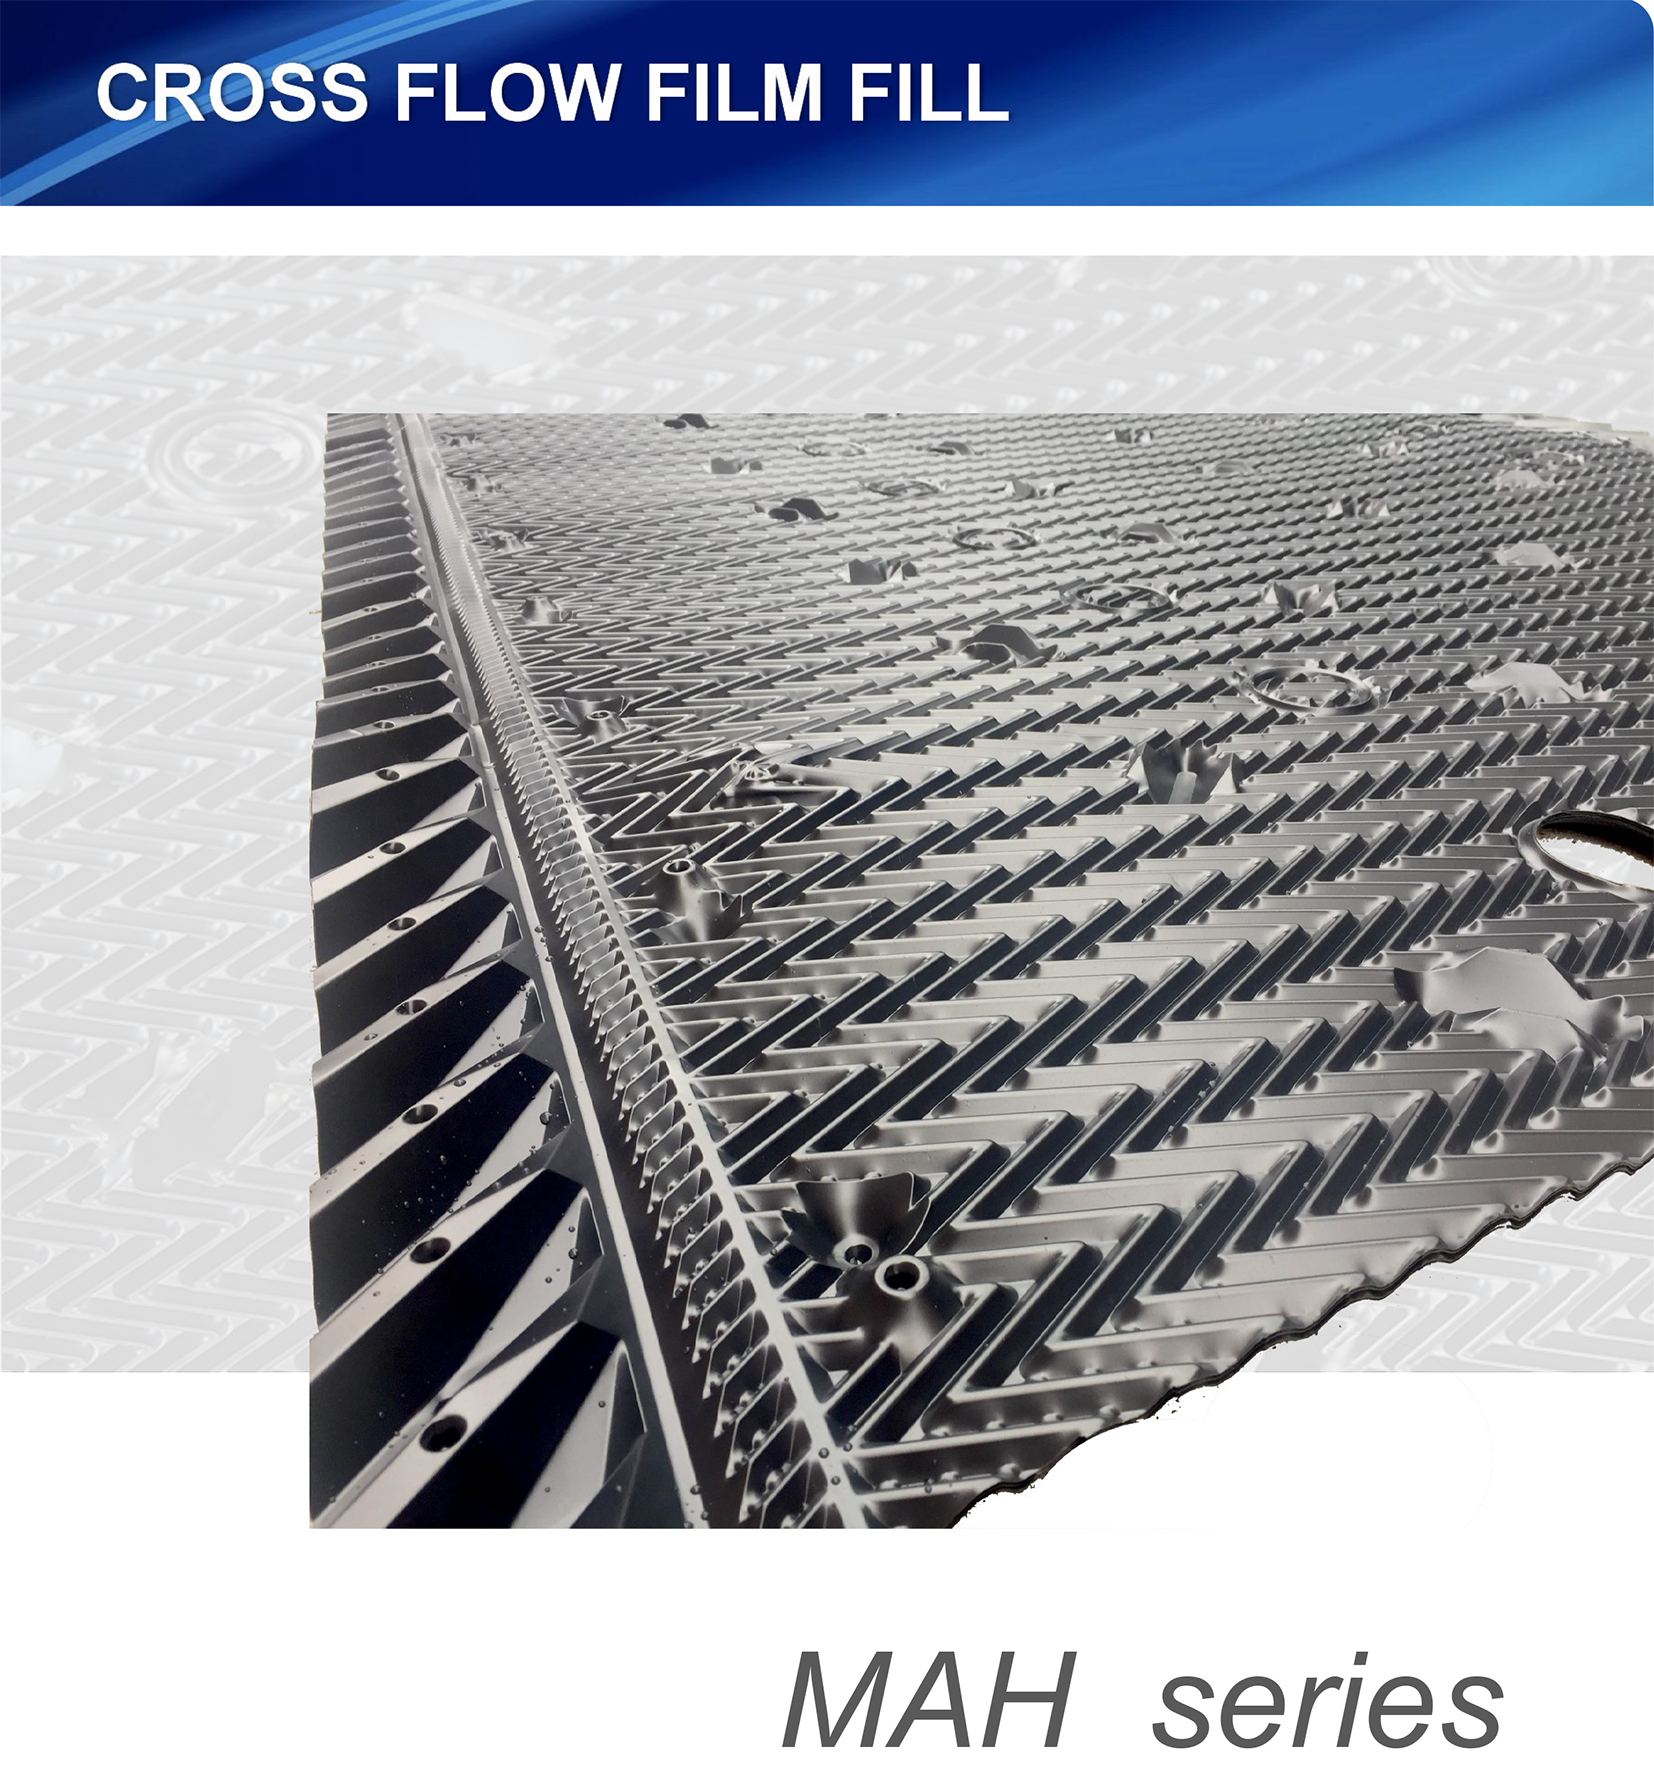 Preenchimento de filme de fluxo cruzado da série MAH